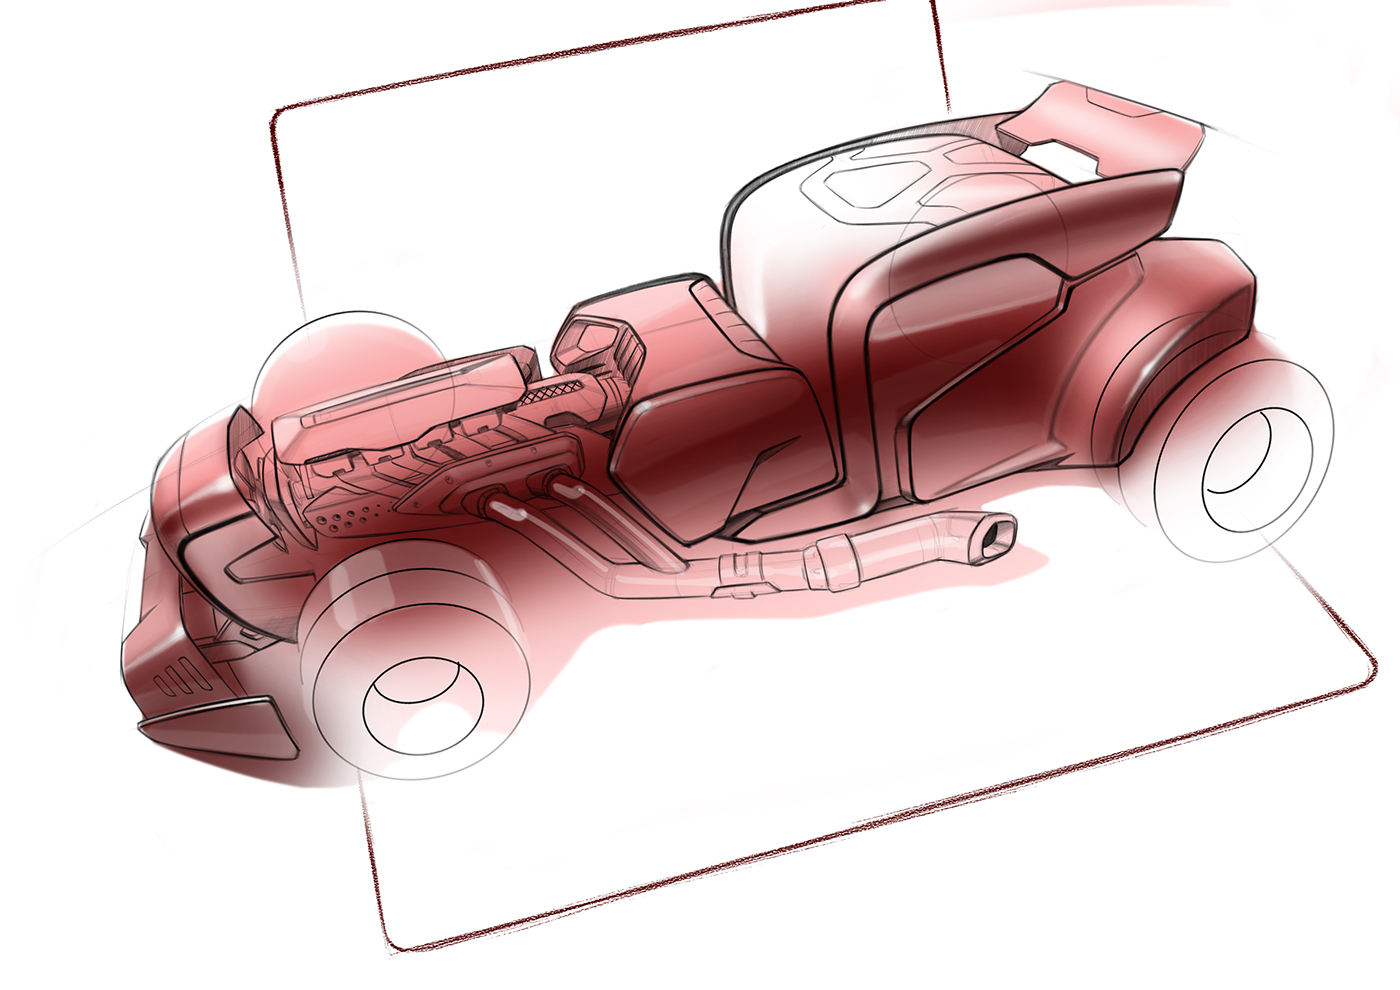 romeodesign design sketching Conception doodle doodling Render automotive   ideation